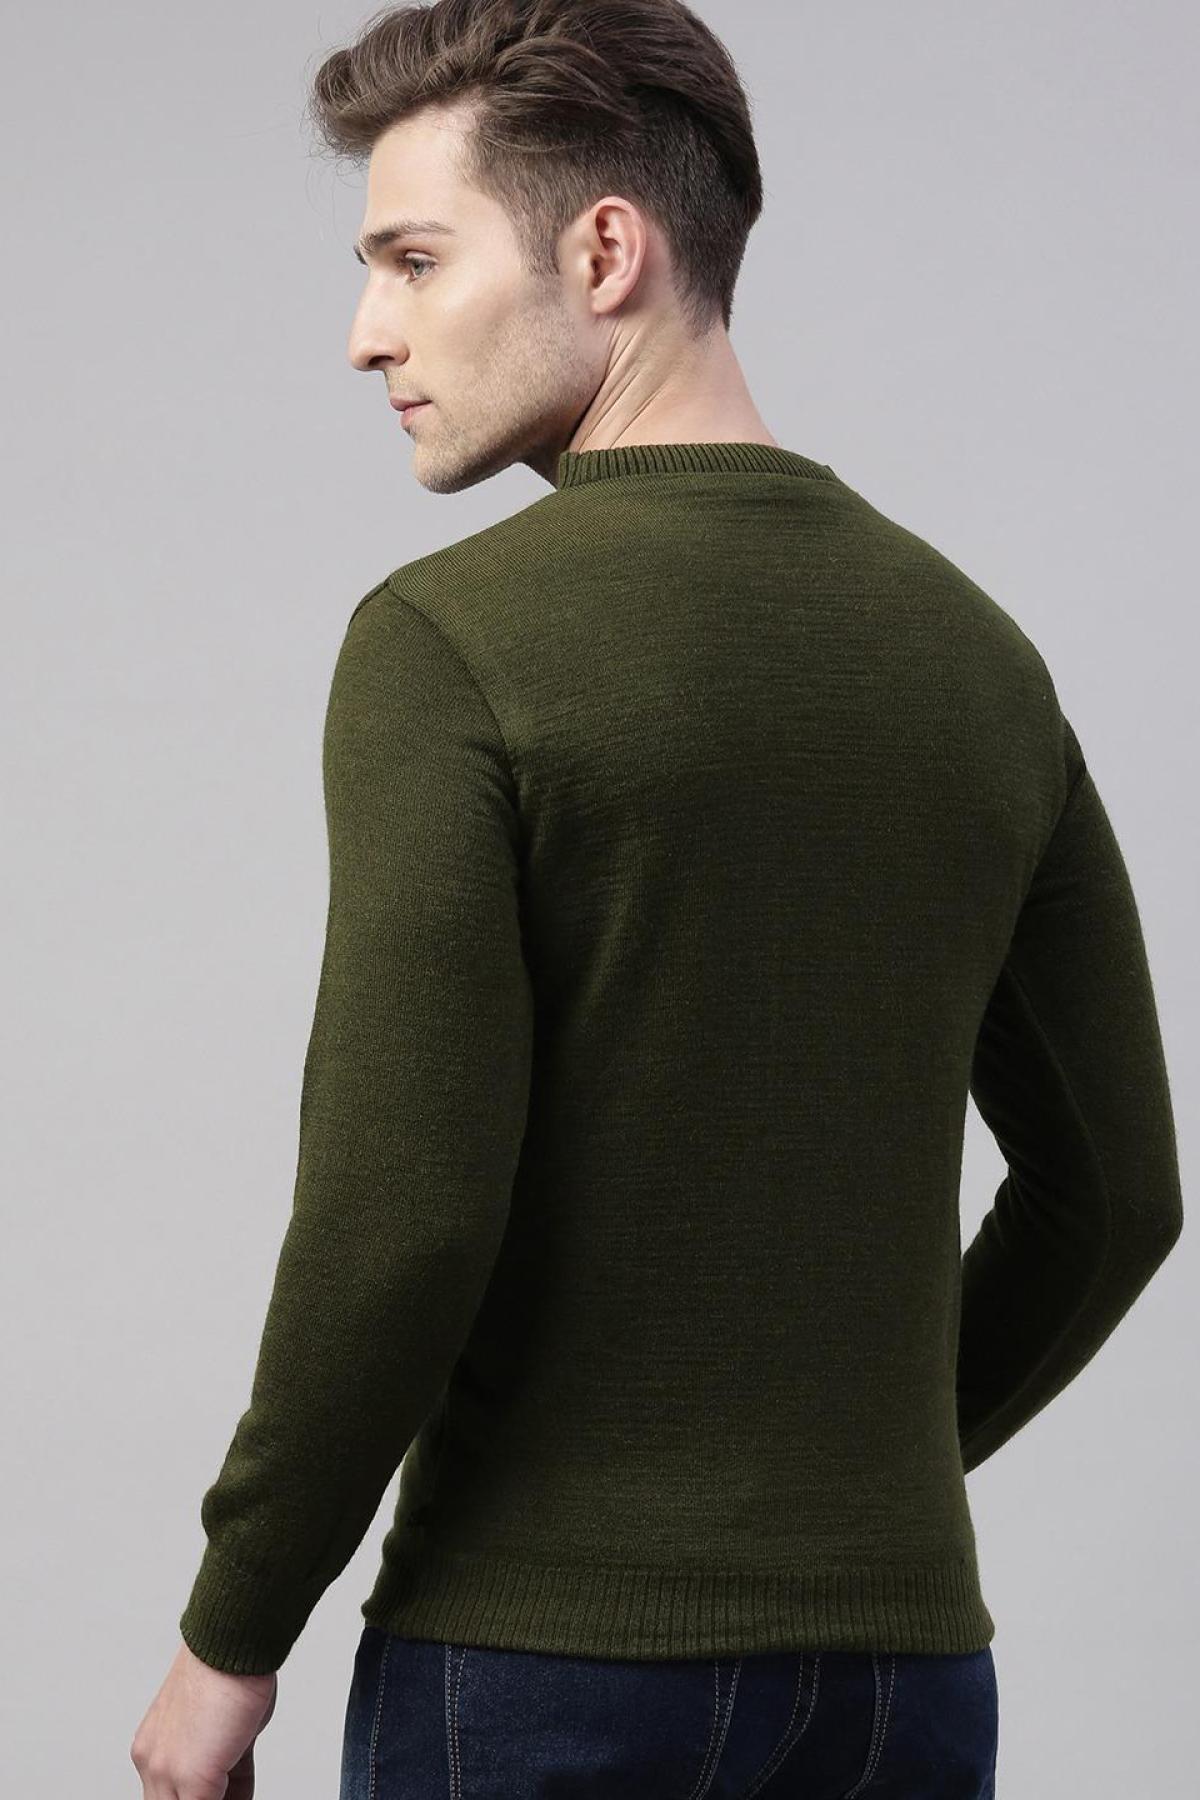 Olive & Camel Merino Blend Reversible Sweater|Men